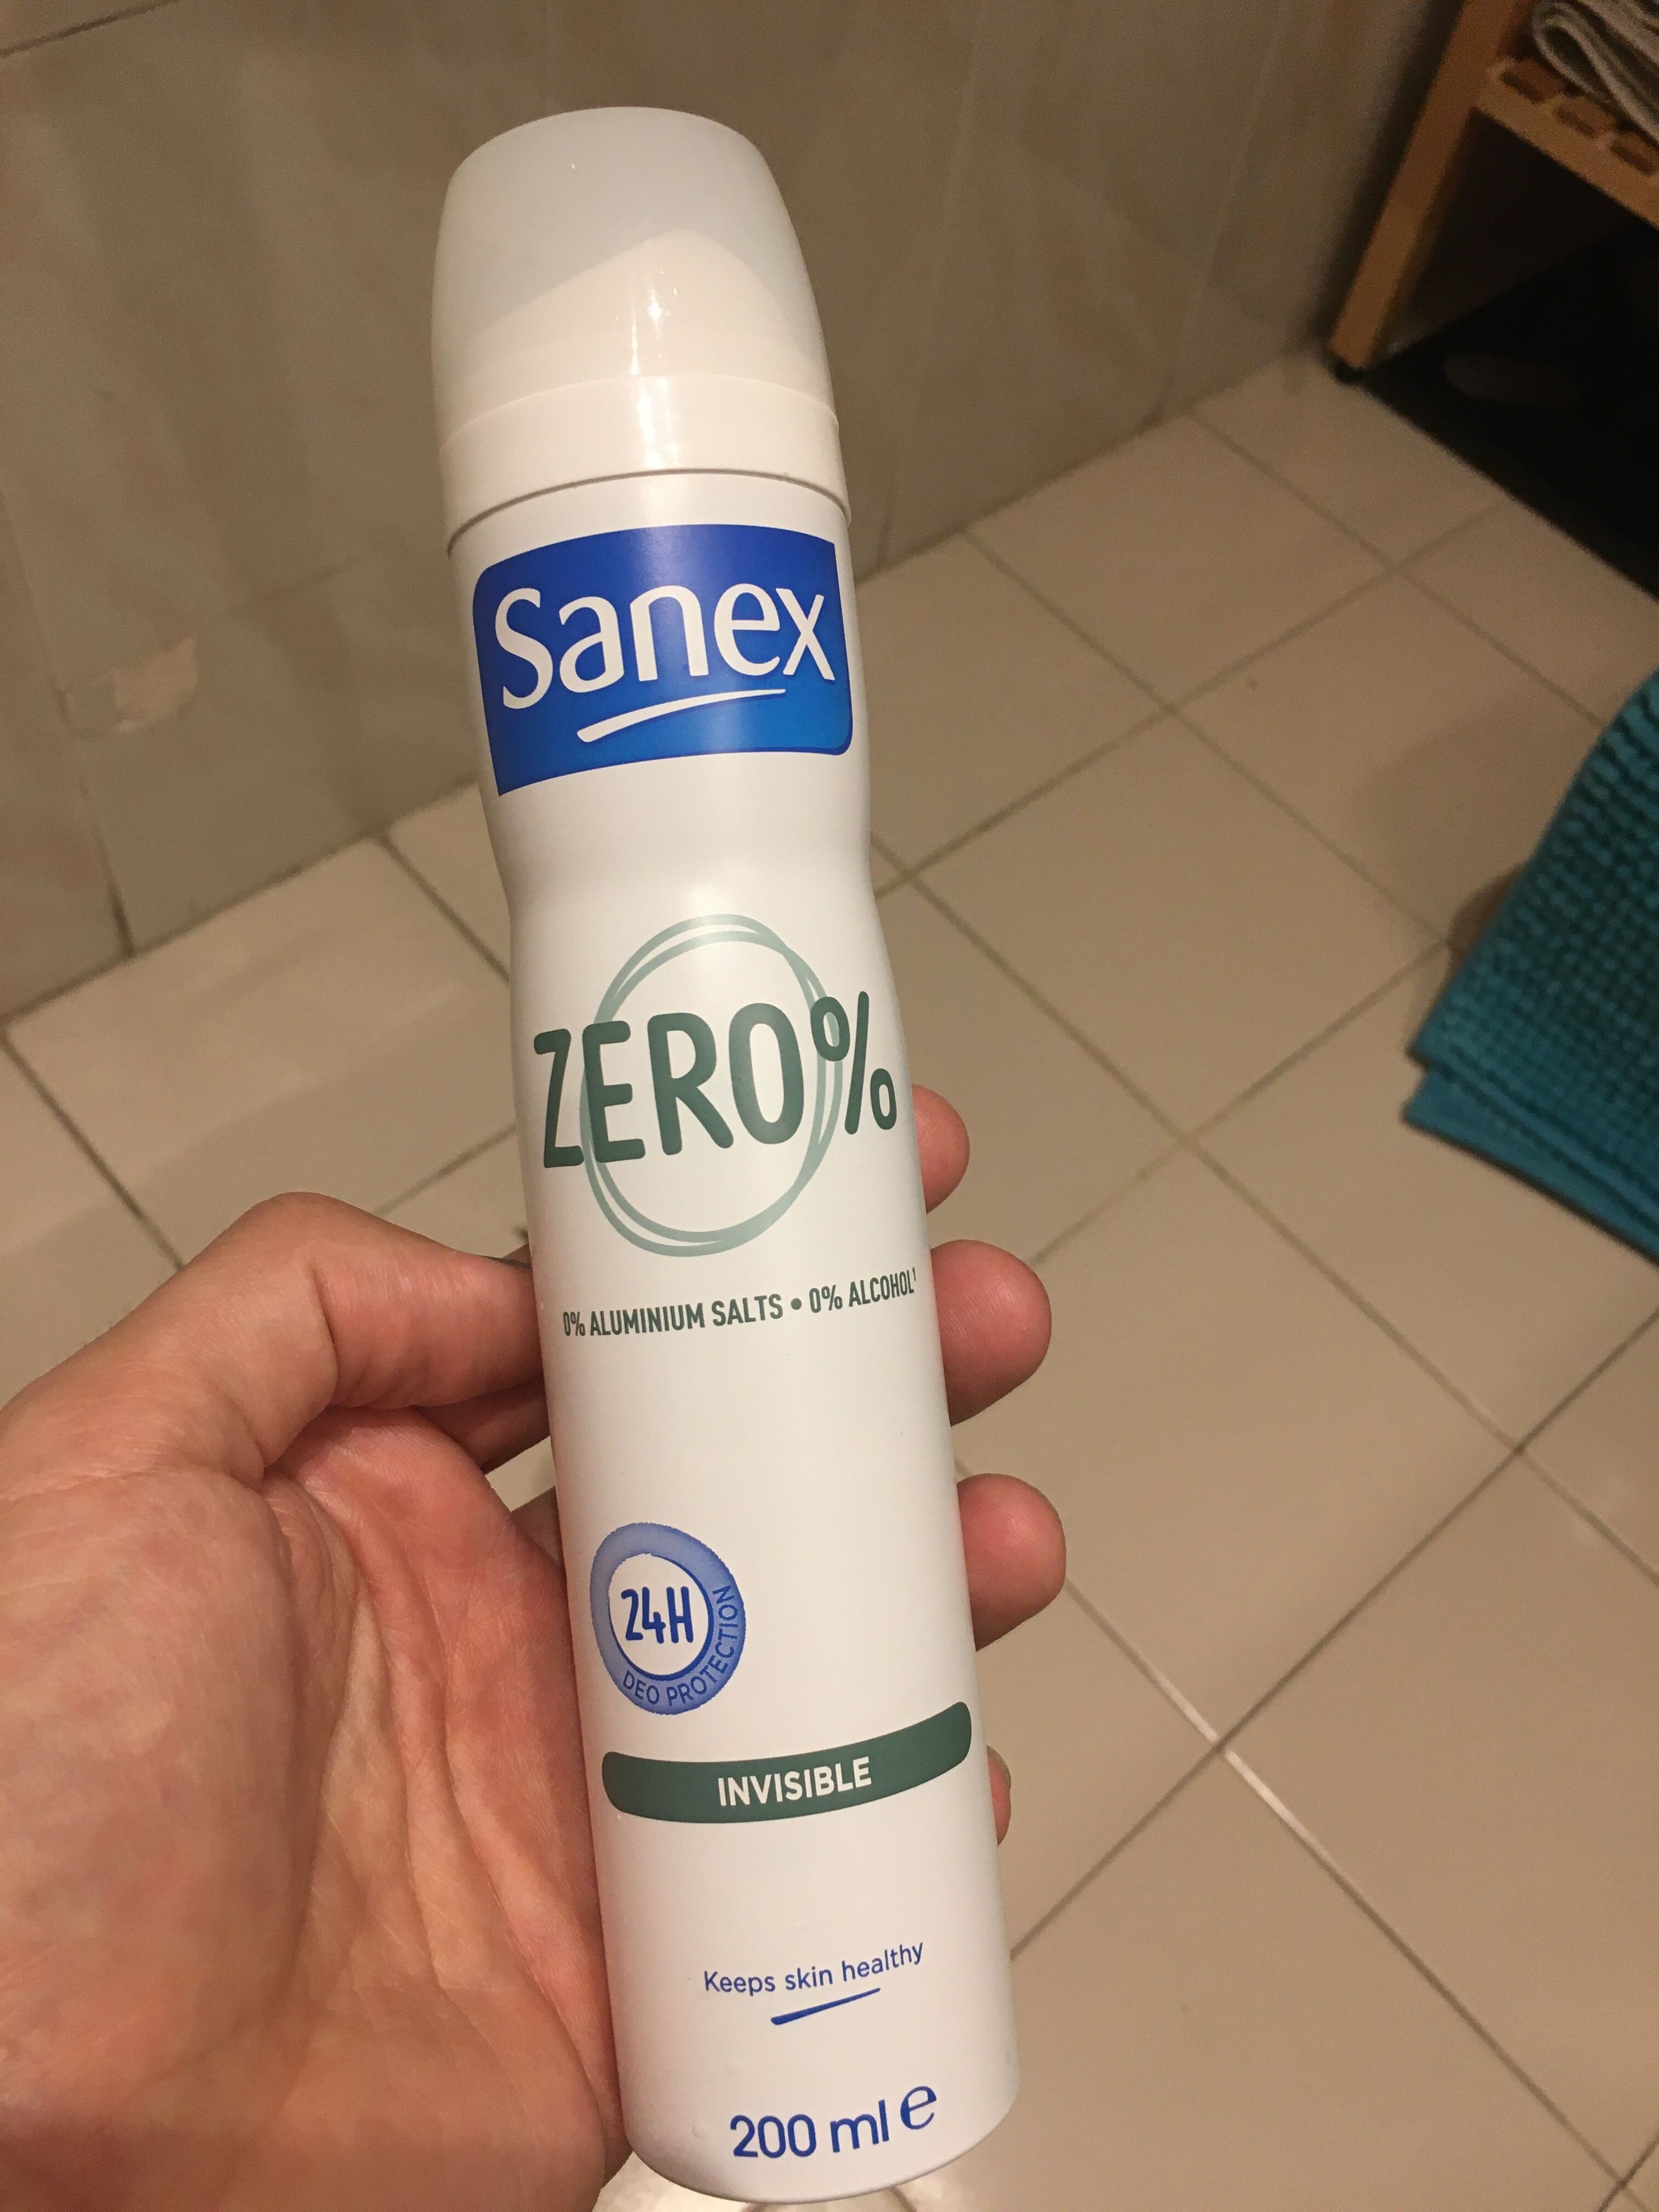 Sanex zero% - Produto - en